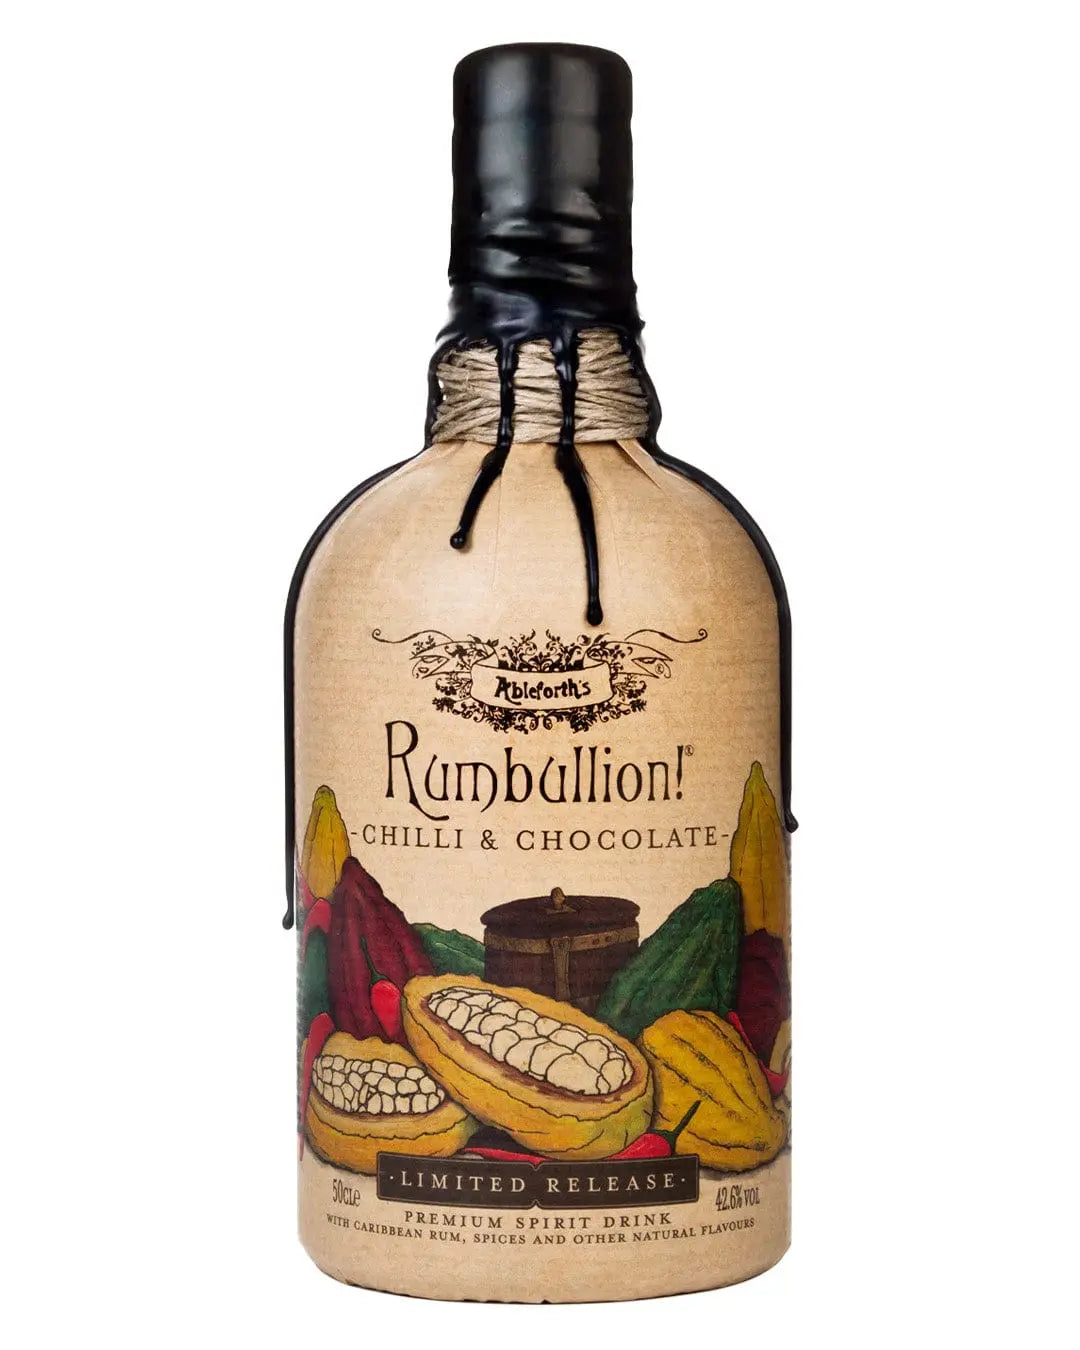 Rumbullion Chilli & Chocolate Rum, 50 cl Rum